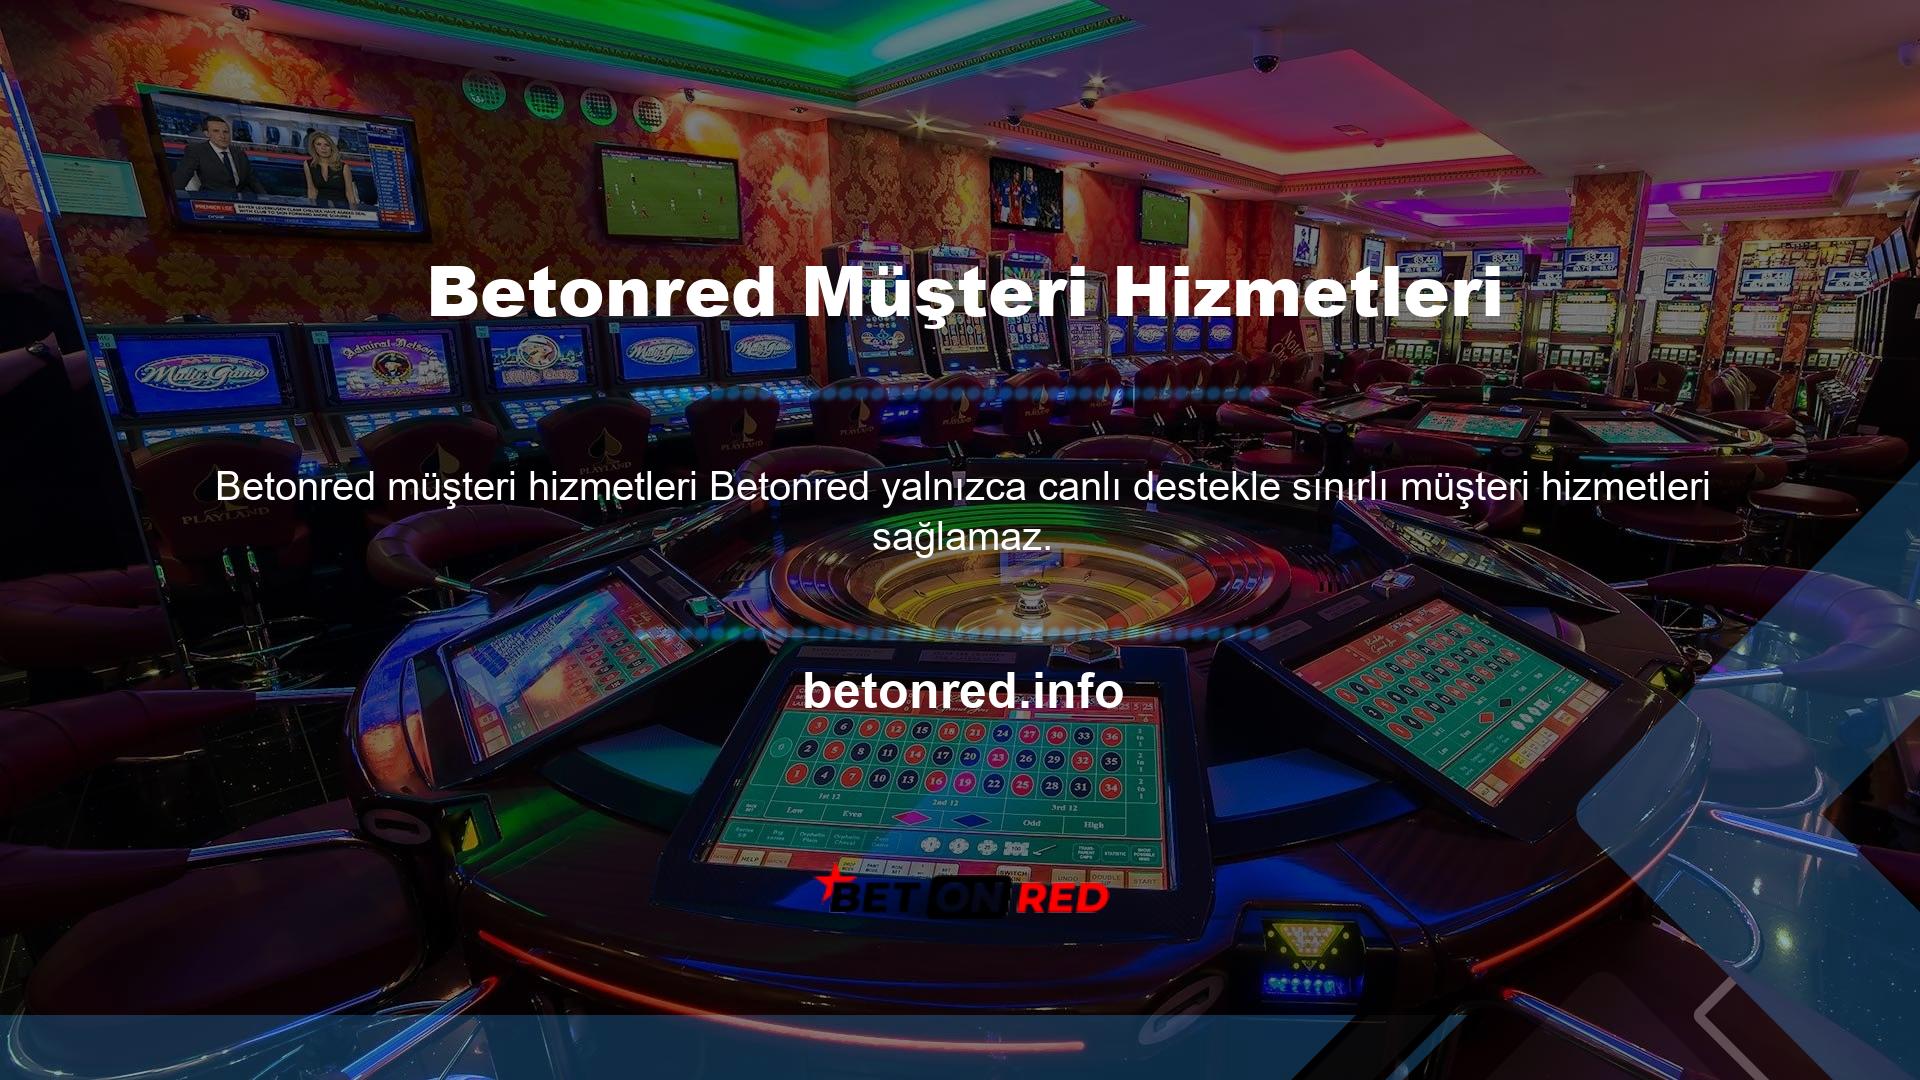 Tam tersine Türk casino pazarındaki en kapsamlı iletişim standartlarını sunmaktadır